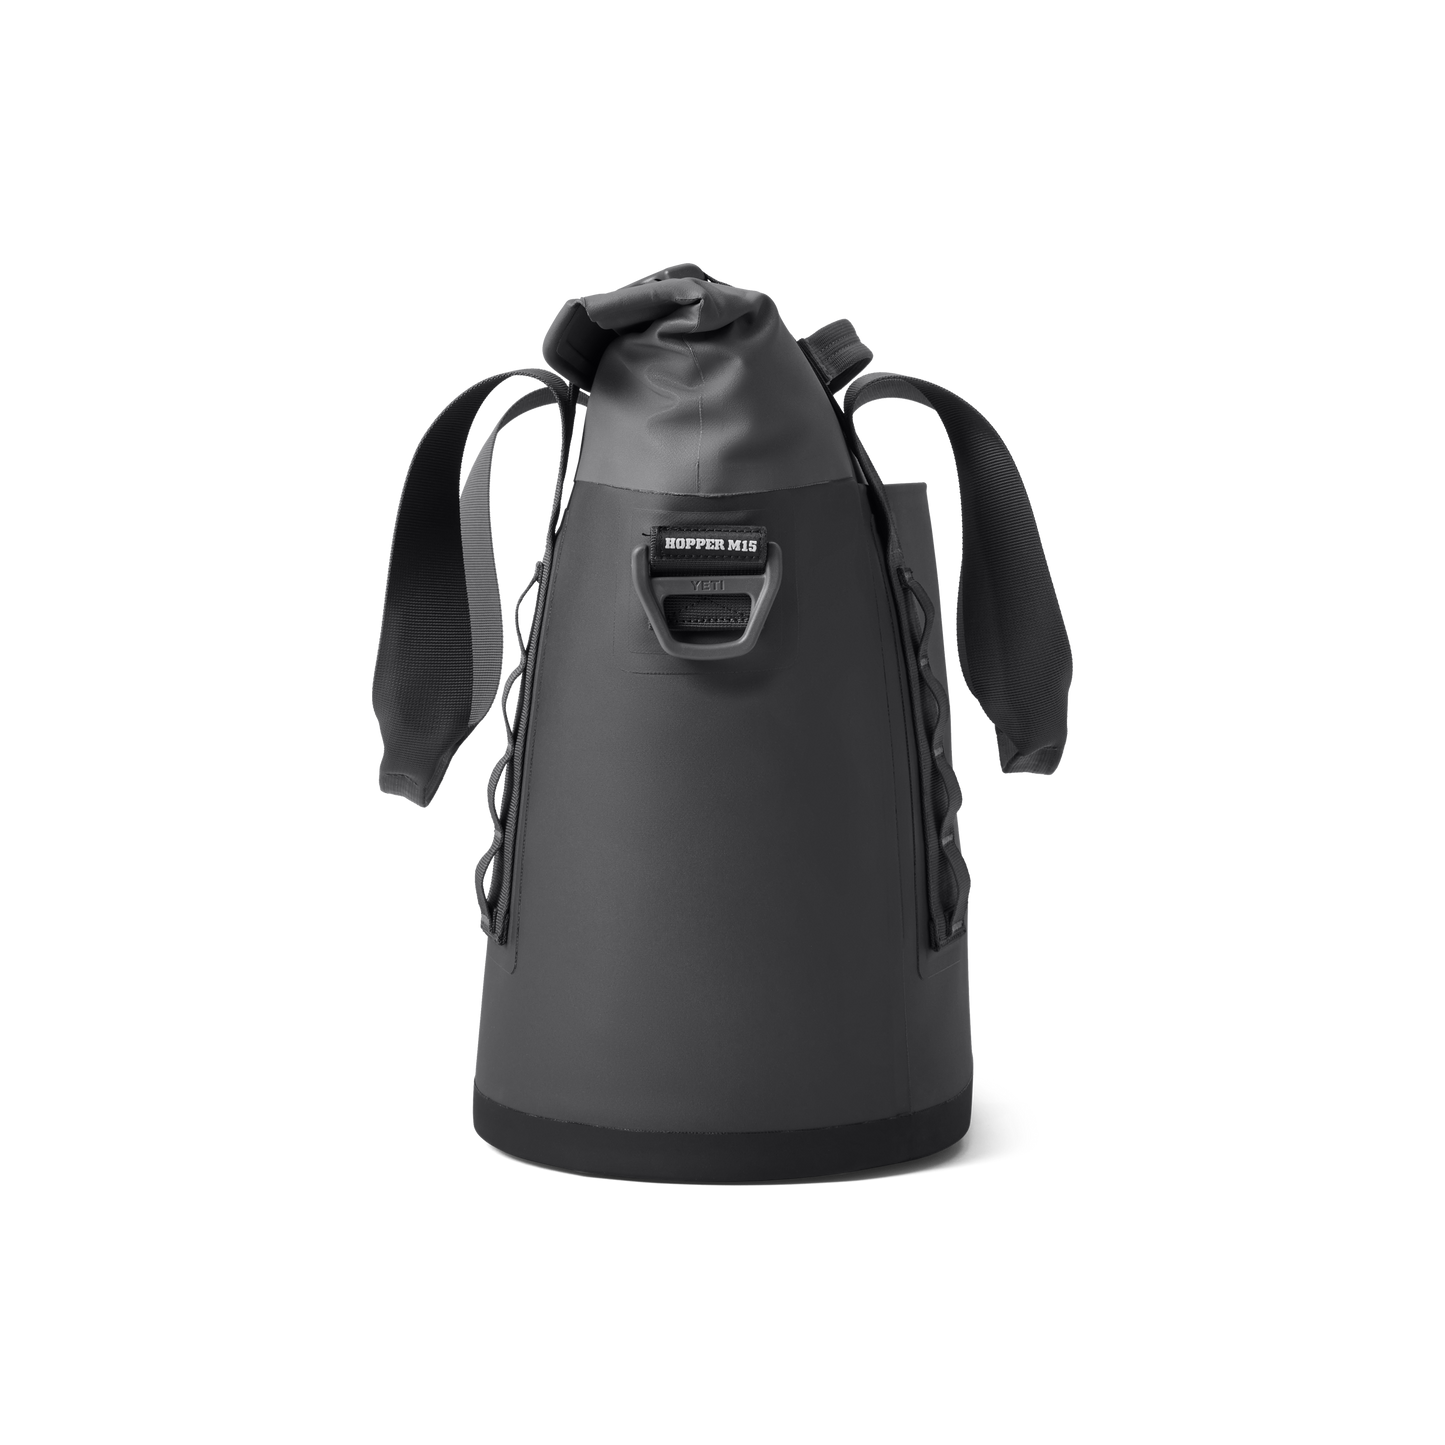 YETI Hopper® M15 Cool Bag Charcoal